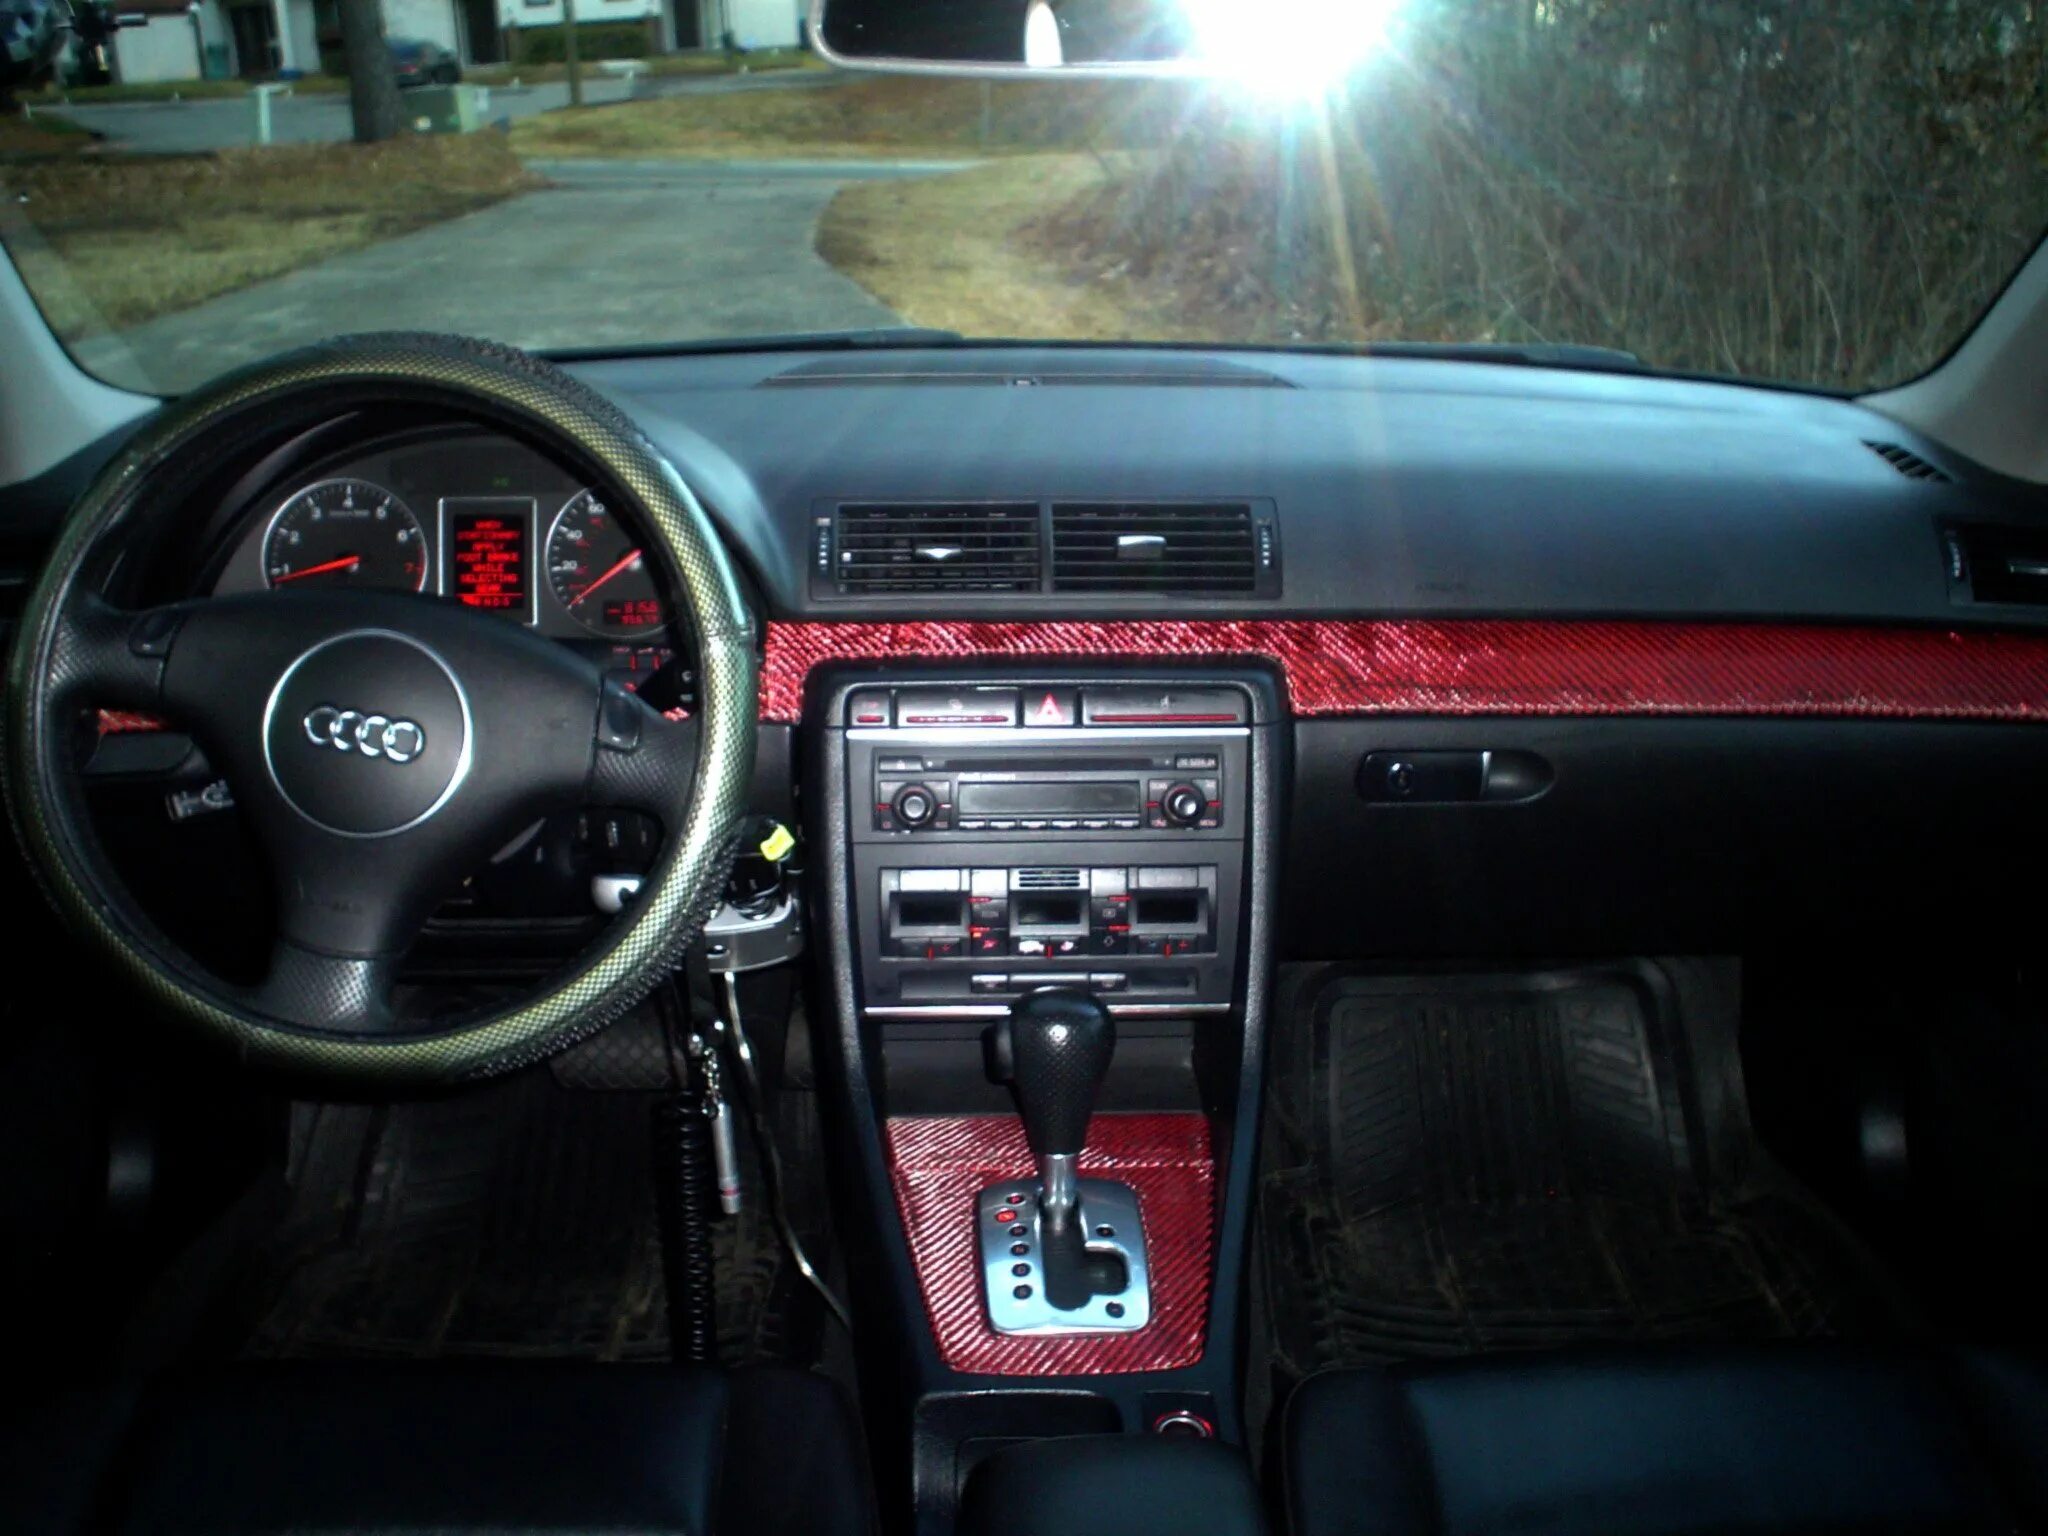 Купить ауди автомат. Audi a4 b5 1996 Interior. Audi a4 b5 2001 Interior. Ауди а4 б6 салон. Audi a4 b5 1995 салон.